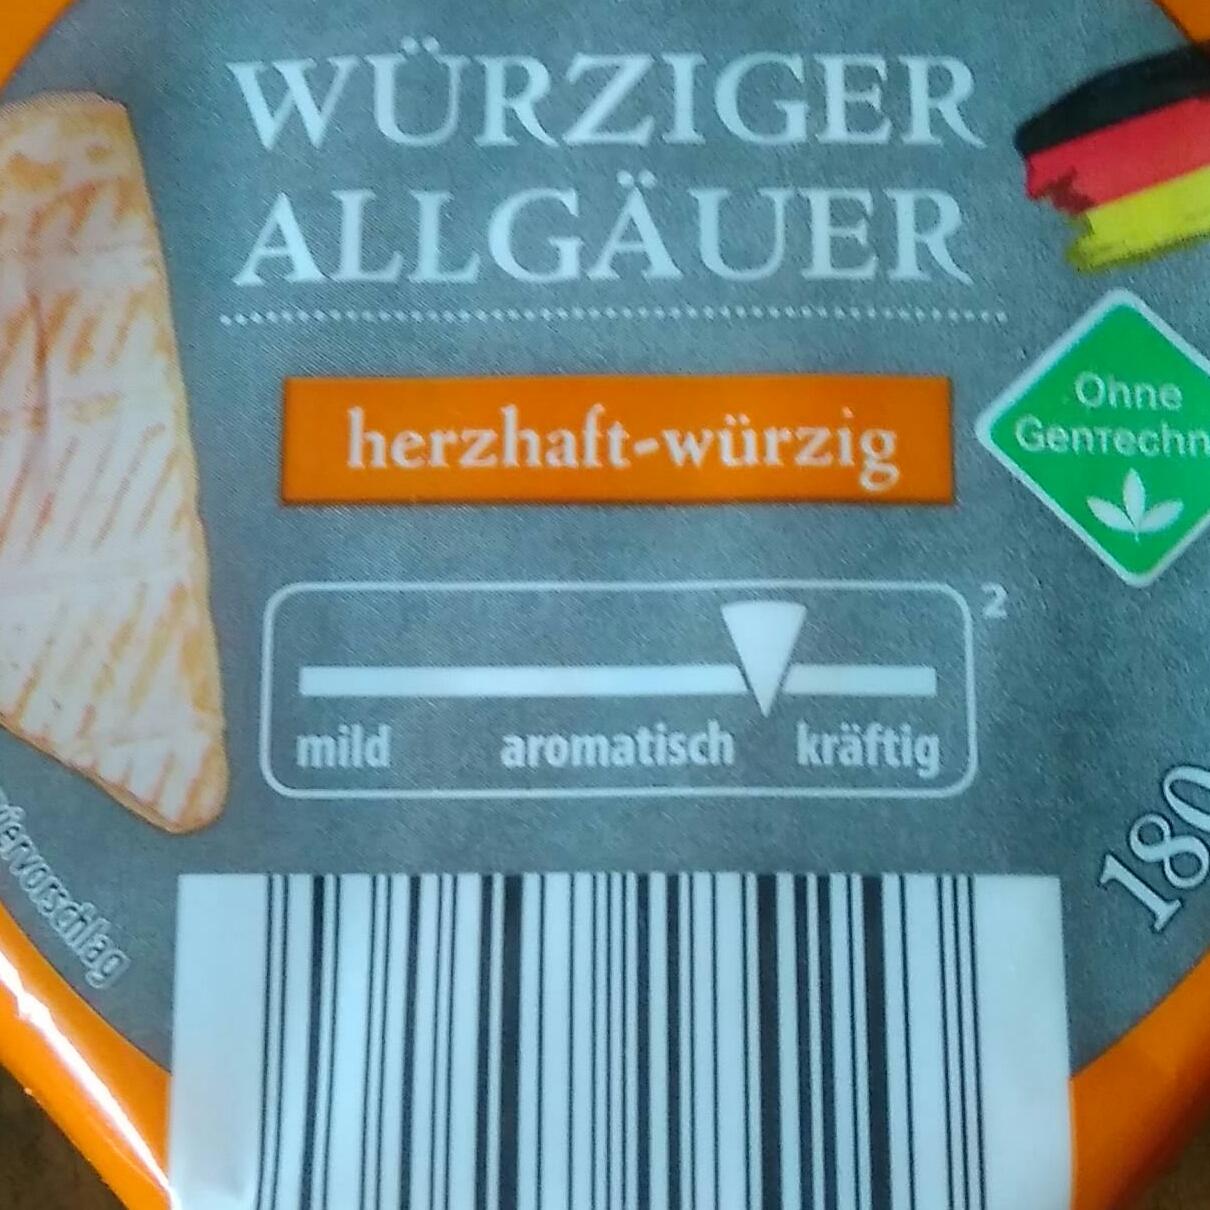 Fotografie - Weichkäse Allgäuer herzhaft-würzig Meine Käsetheke